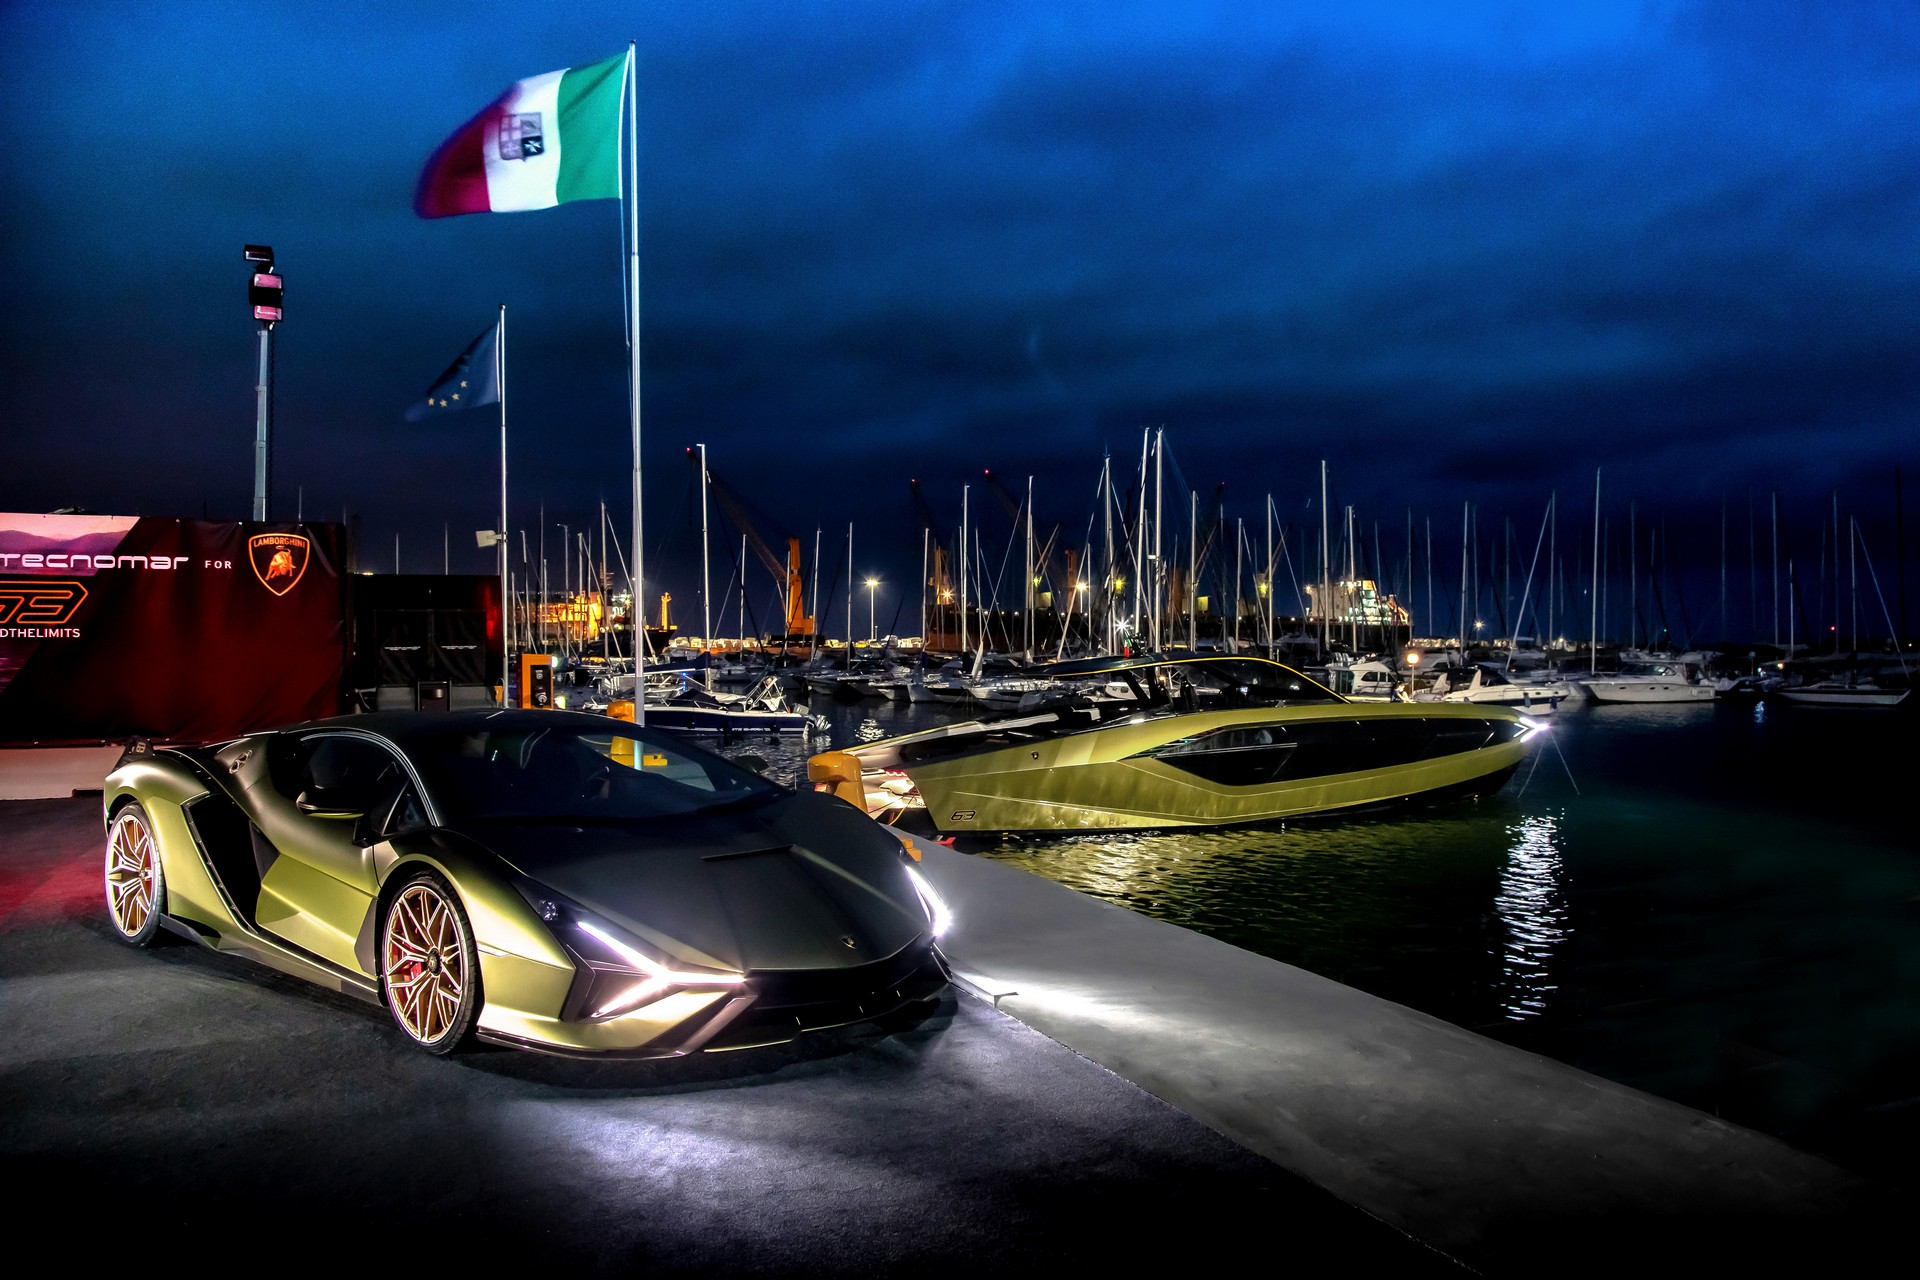 Sau thời gian dài chờ mòn mỏi, Conor McGregor sắp được nhận siêu du thuyền Lamborghini Tecnomar giá hơn 3,5 triệu USD - Ảnh 6.